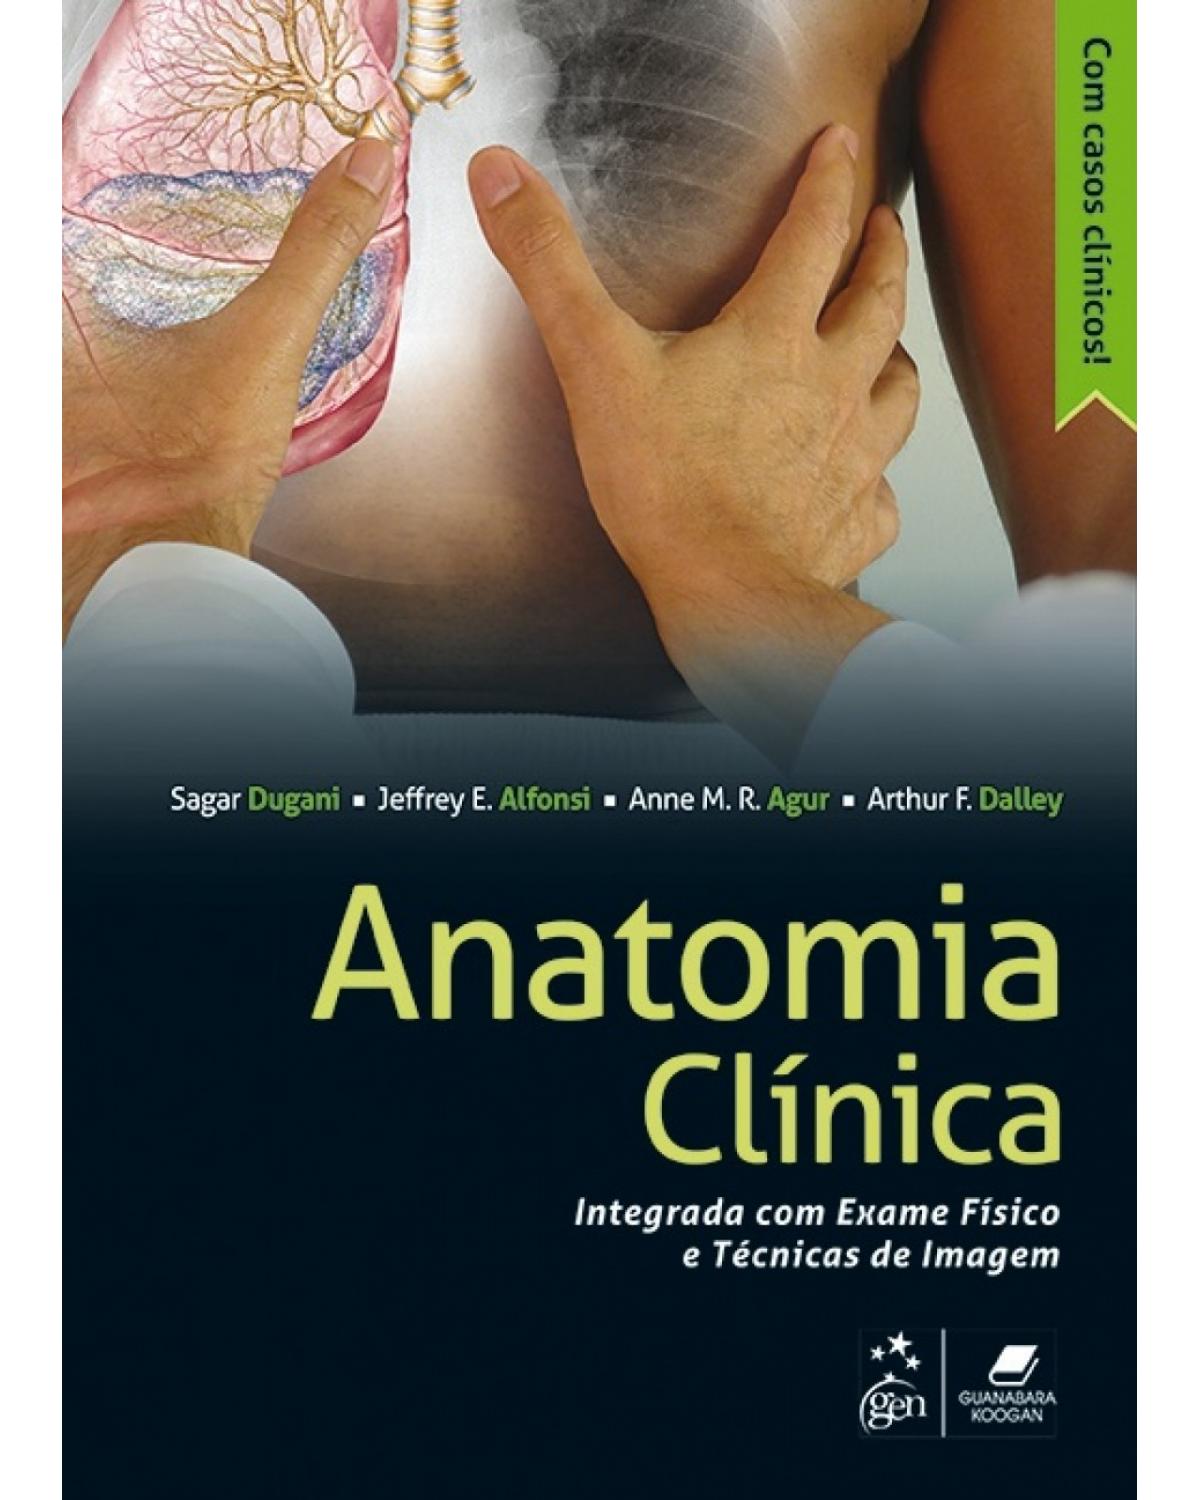 Anatomia clínica - Integrada com exame físico e técnicas de imagem - 1ª Edição | 2017